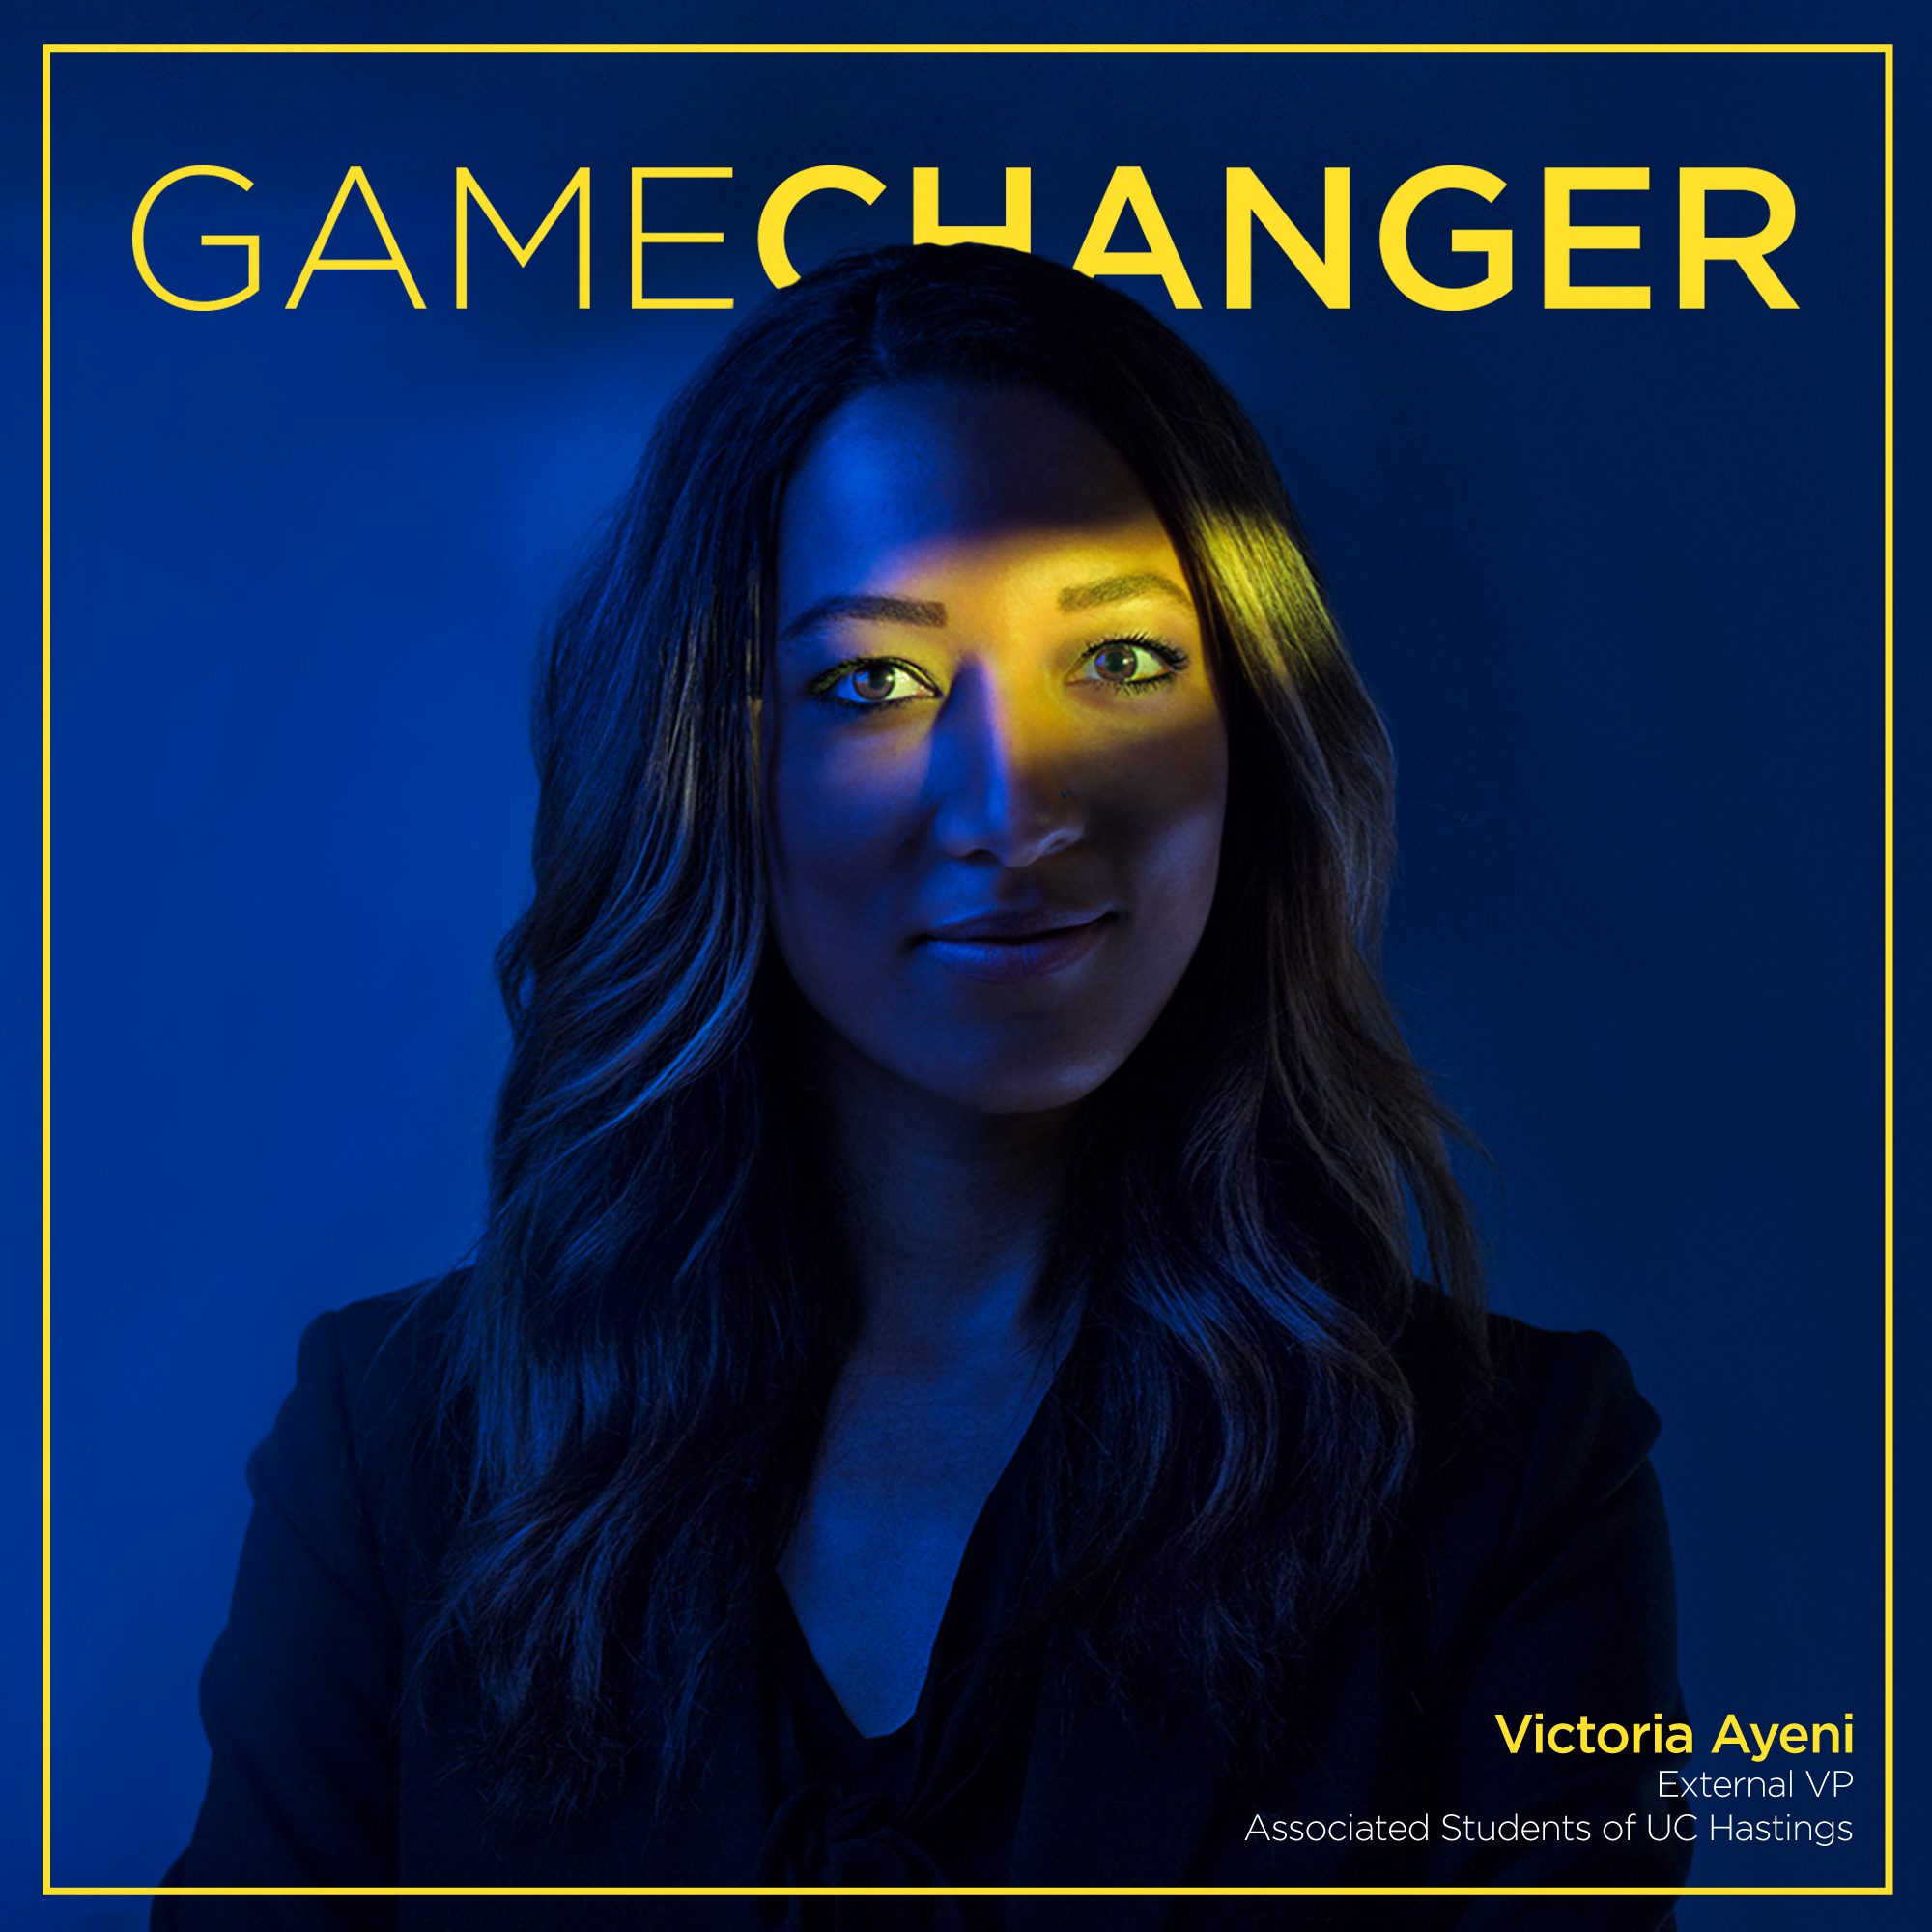 Victoria Ayeni, Gamechanger